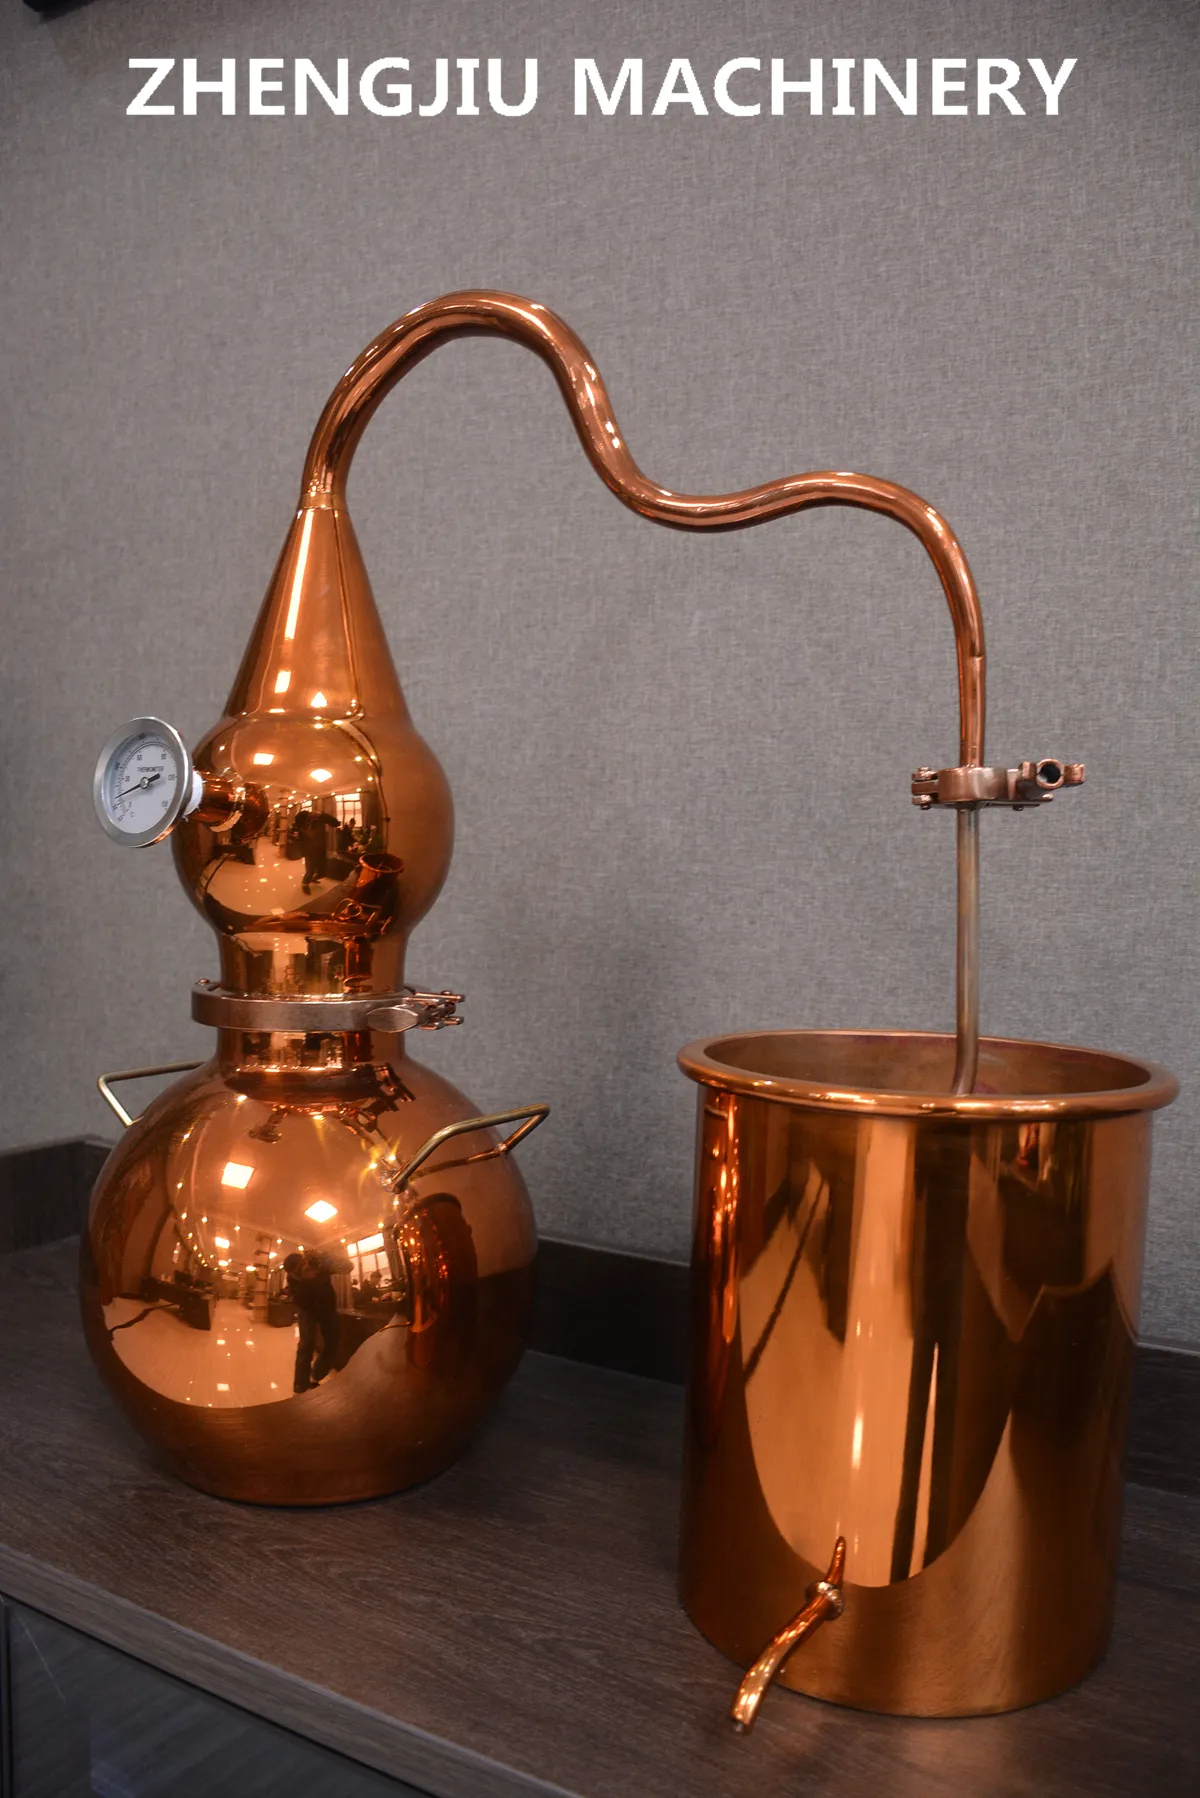 ZJ Mini Destill ier apparat Gin Destille rie Ausrüstung Home Mondschein brenner Home Destille rie Kupfer